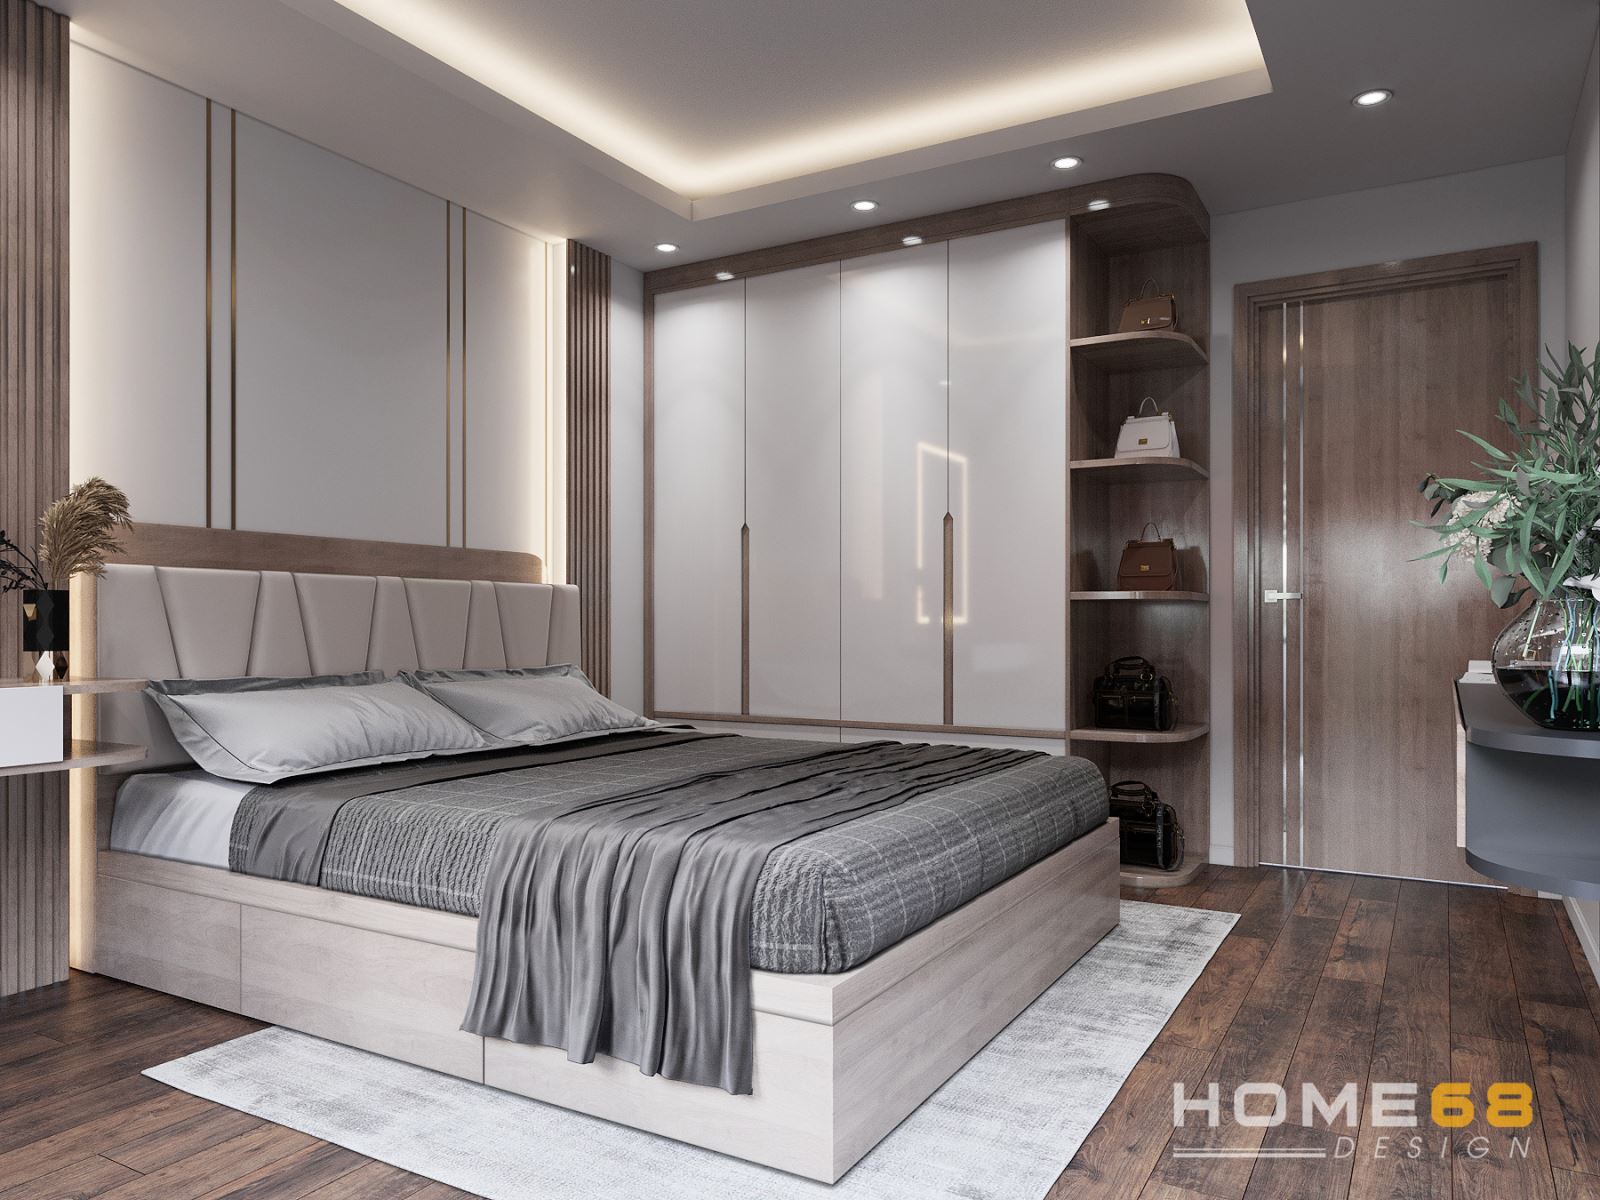 Thiết kế nội thất phòng ngủ hiện đại với tone nâu- trắng thanh lịch- HOME68